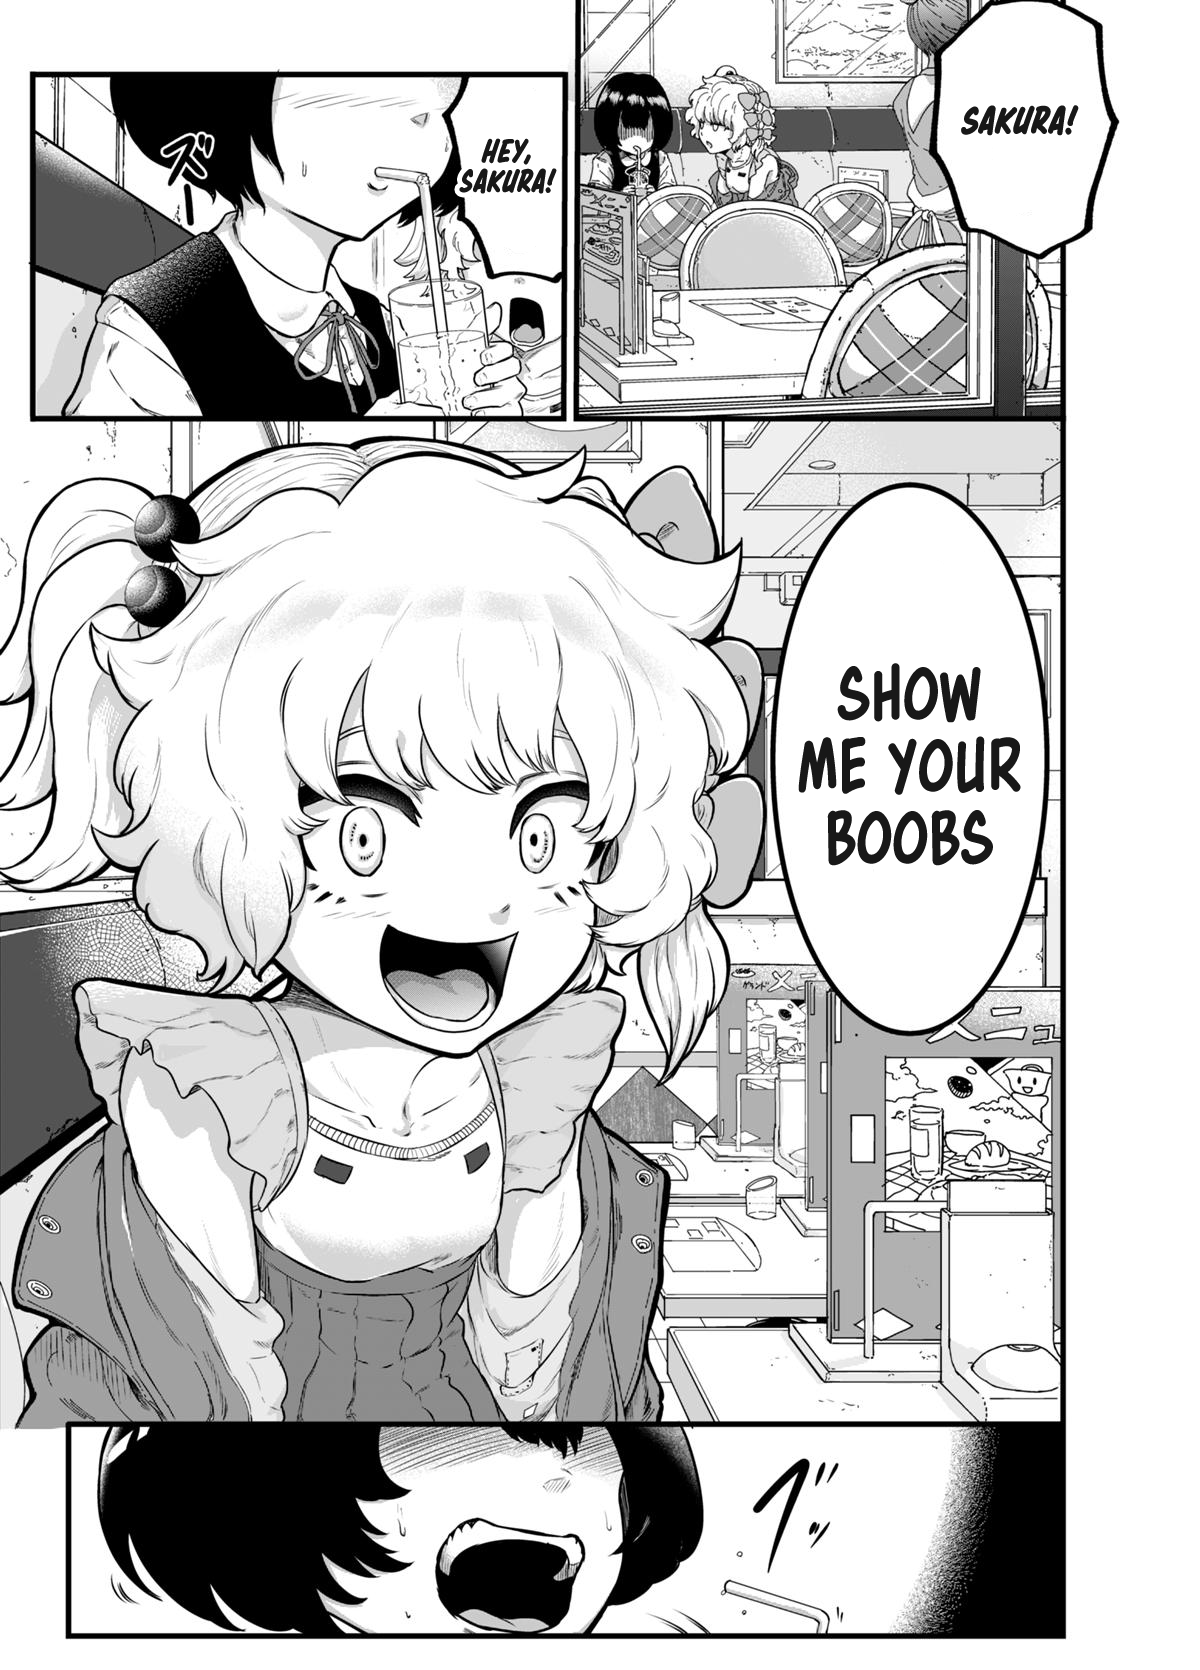 Show Me Your Boobs manga